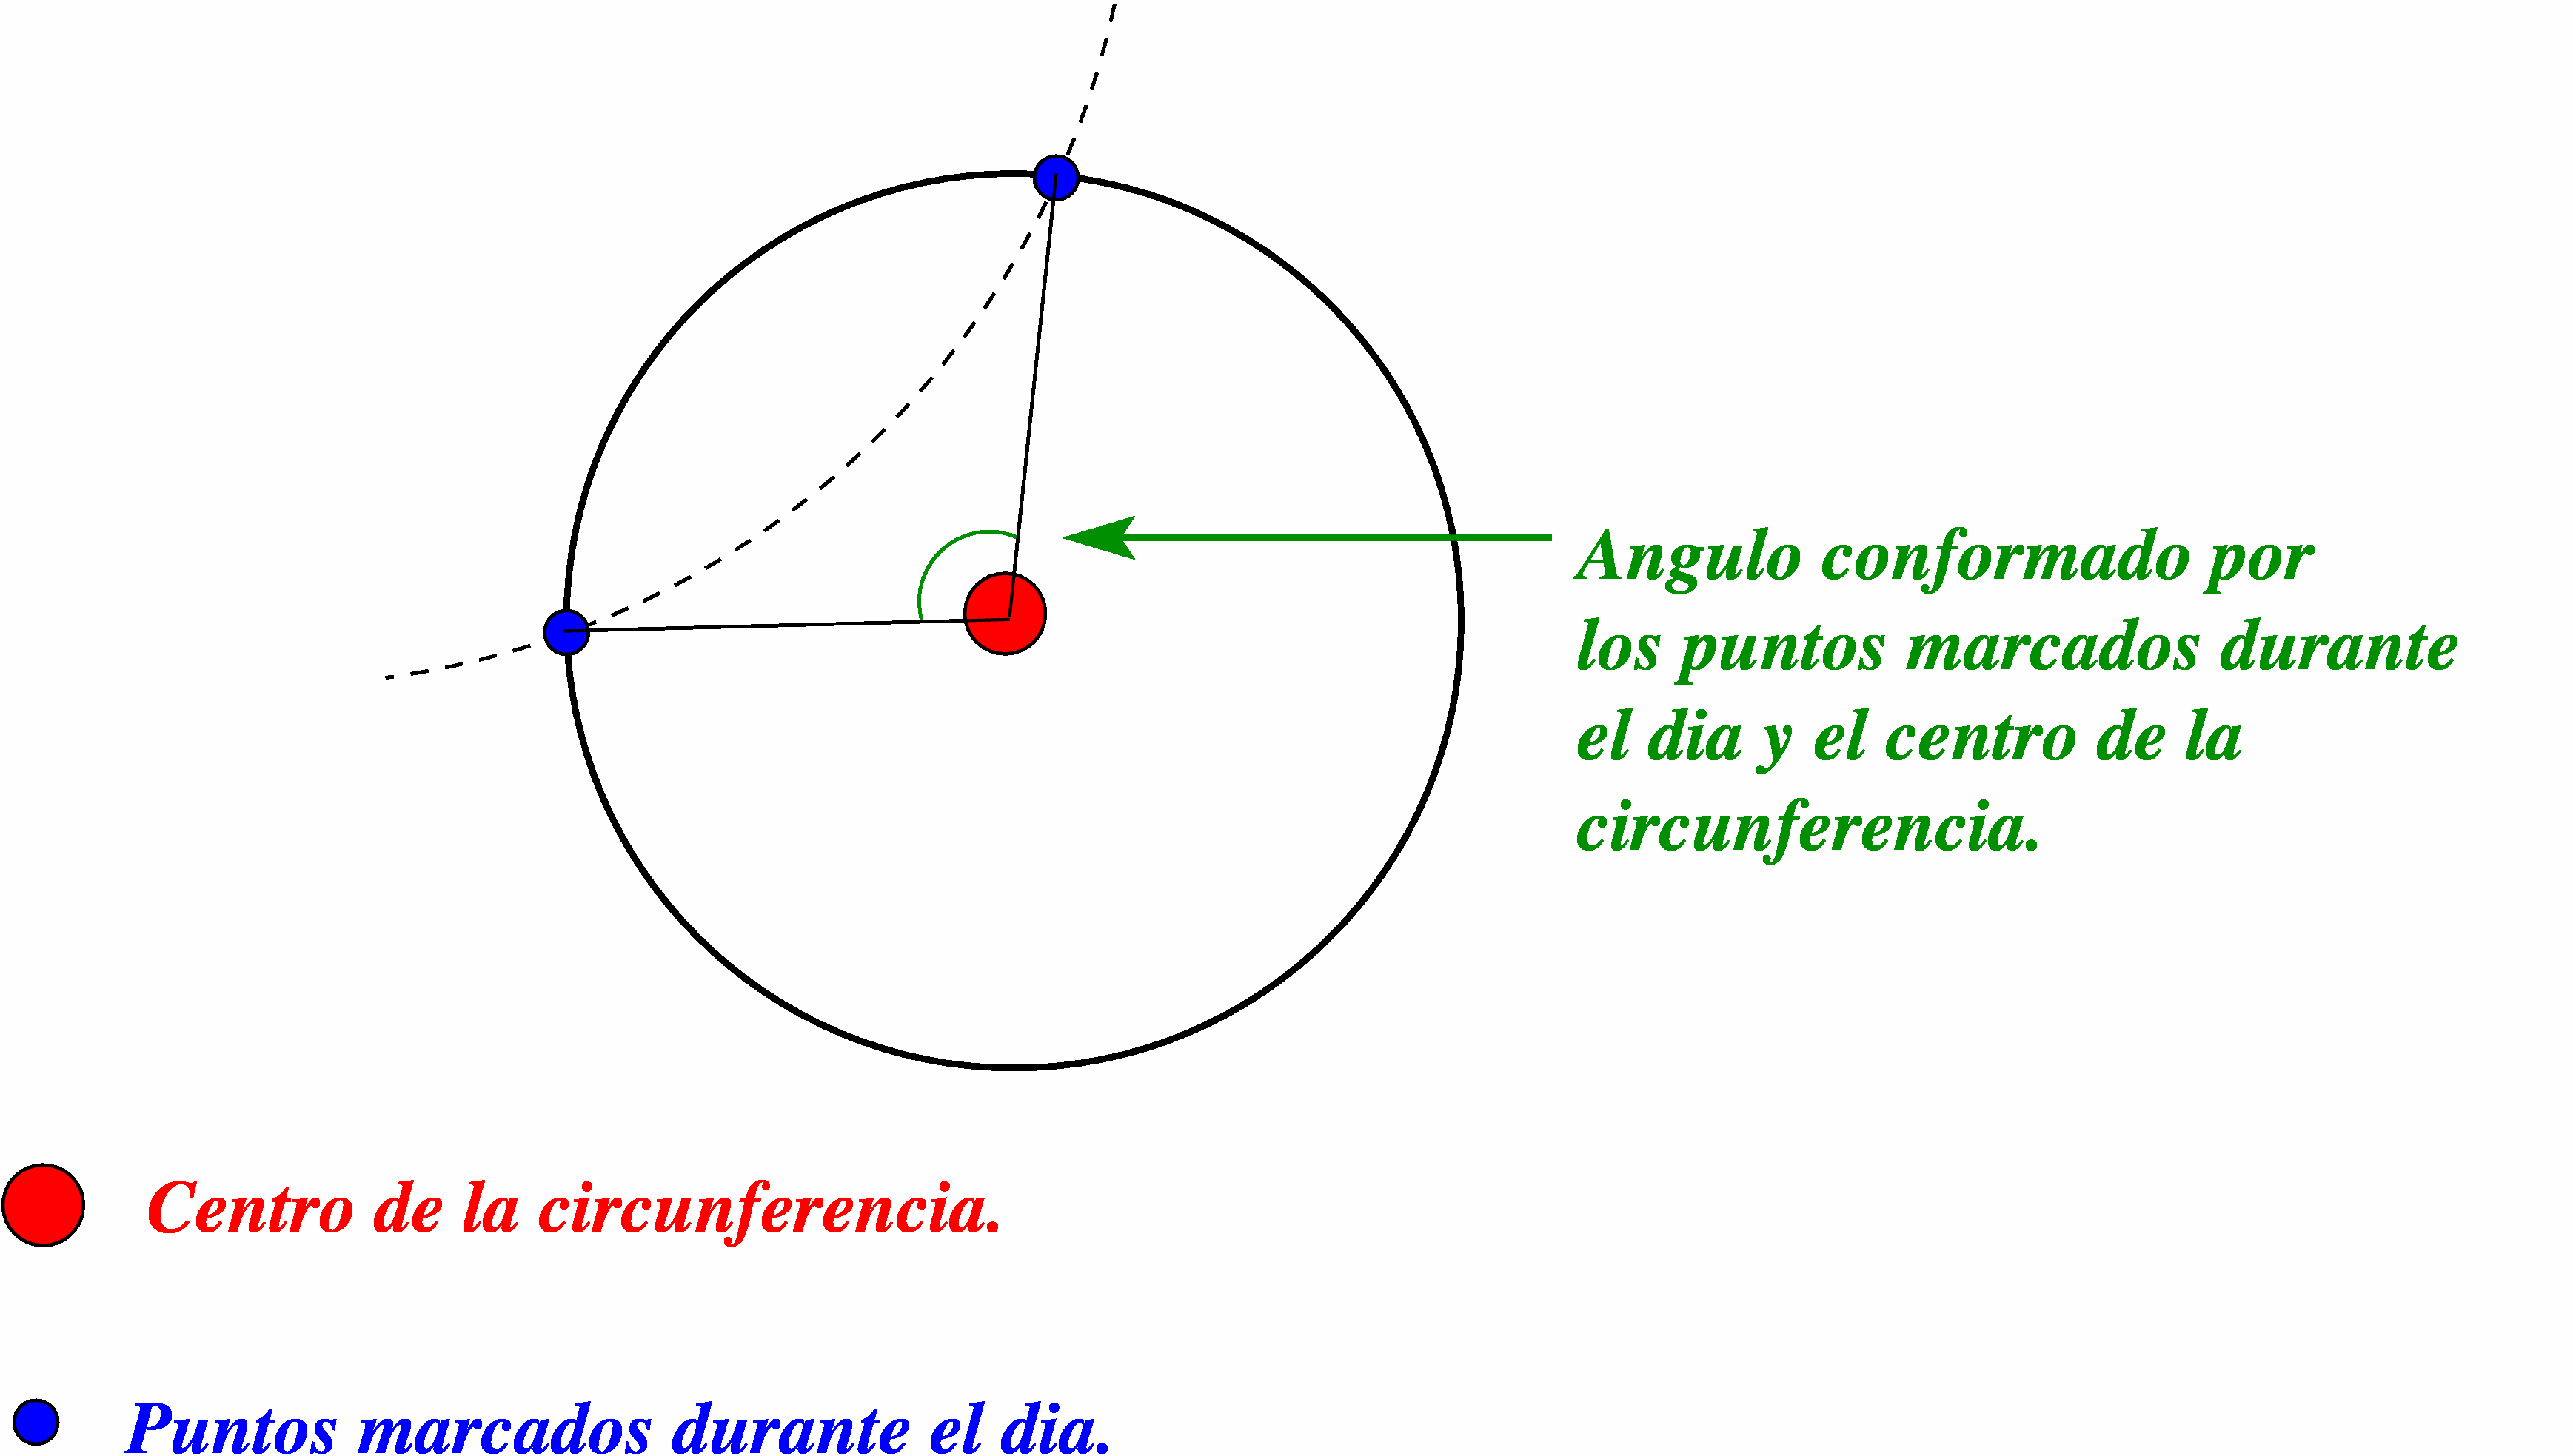 Se traza el ángulo que forma el punto donde la plomada toca el suelo (centro de la circunferencia), con